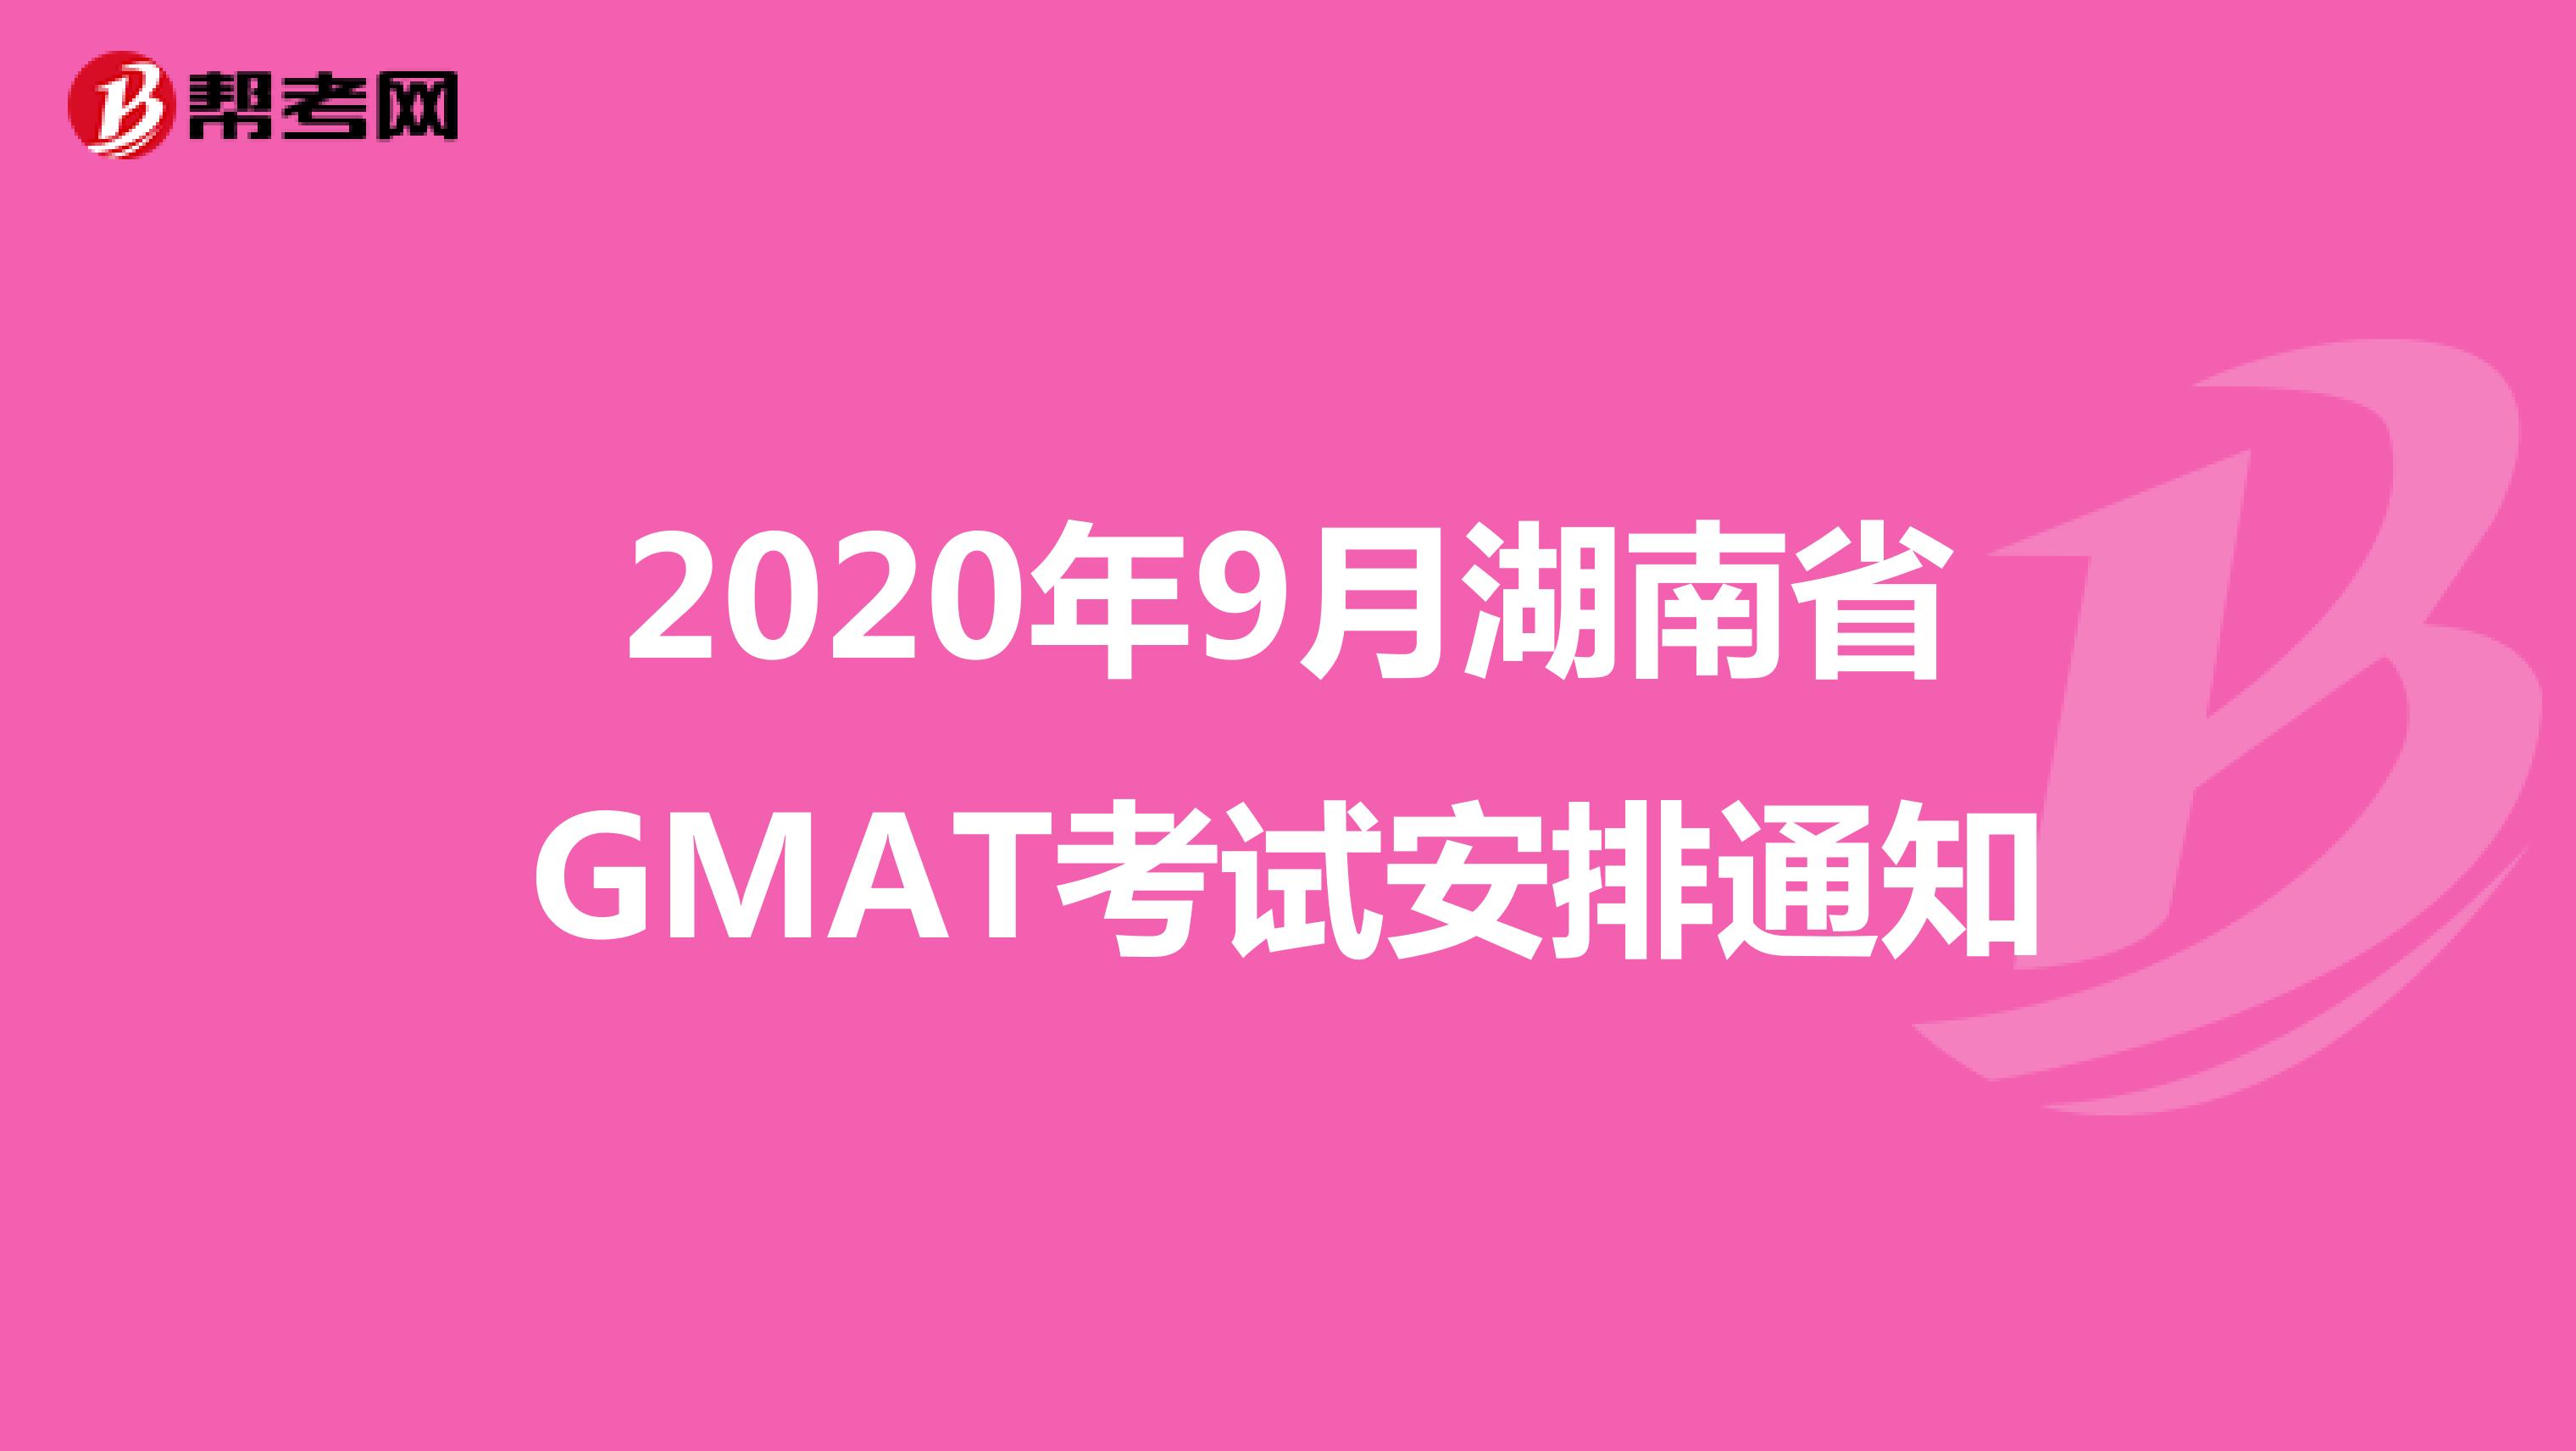 2020年9月湖南省GMAT考试安排通知